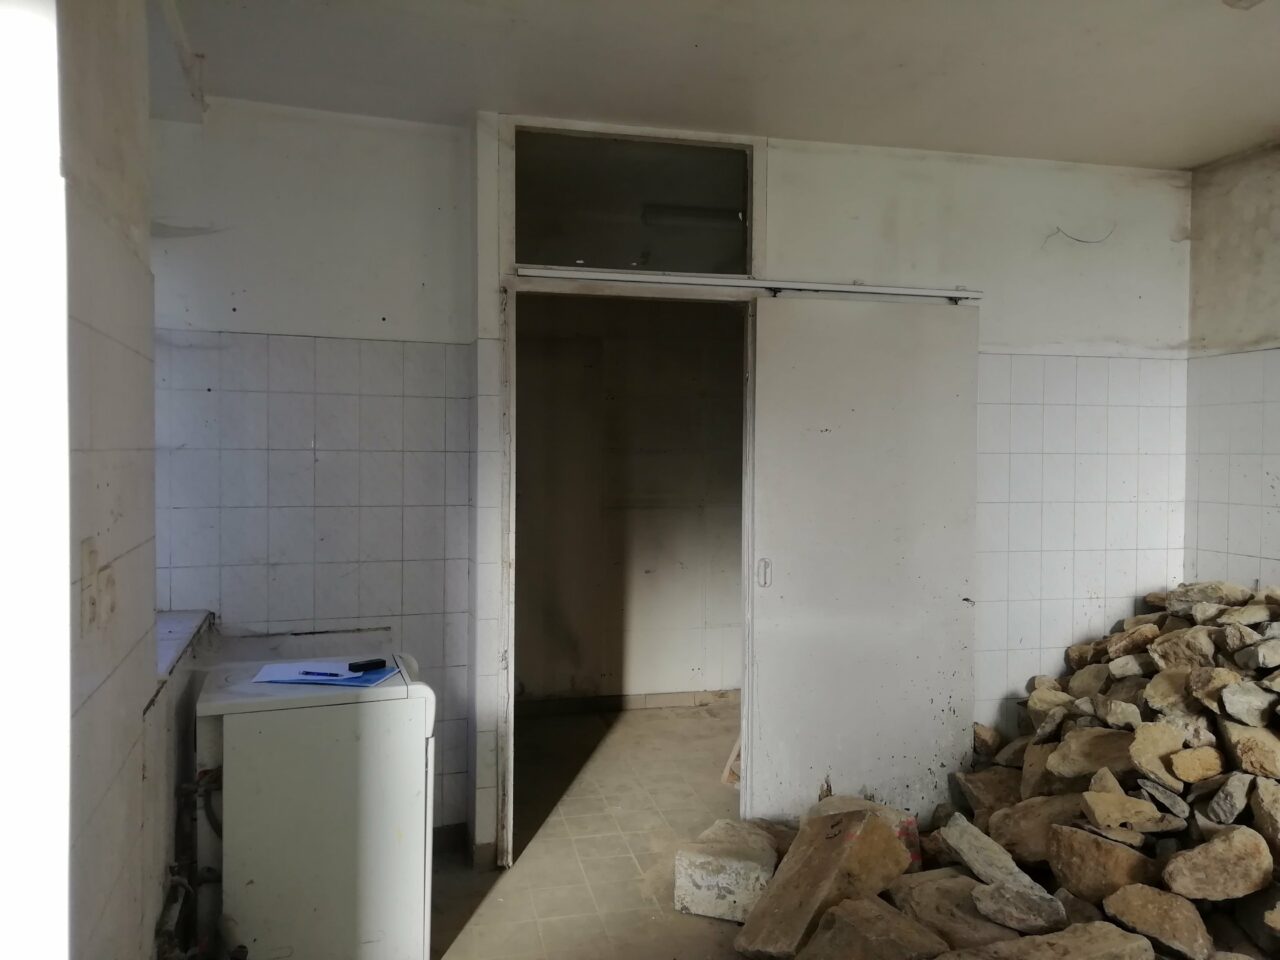 Rénovation d’un appartement et studio à Saint-Germain-en-Coglès (35)